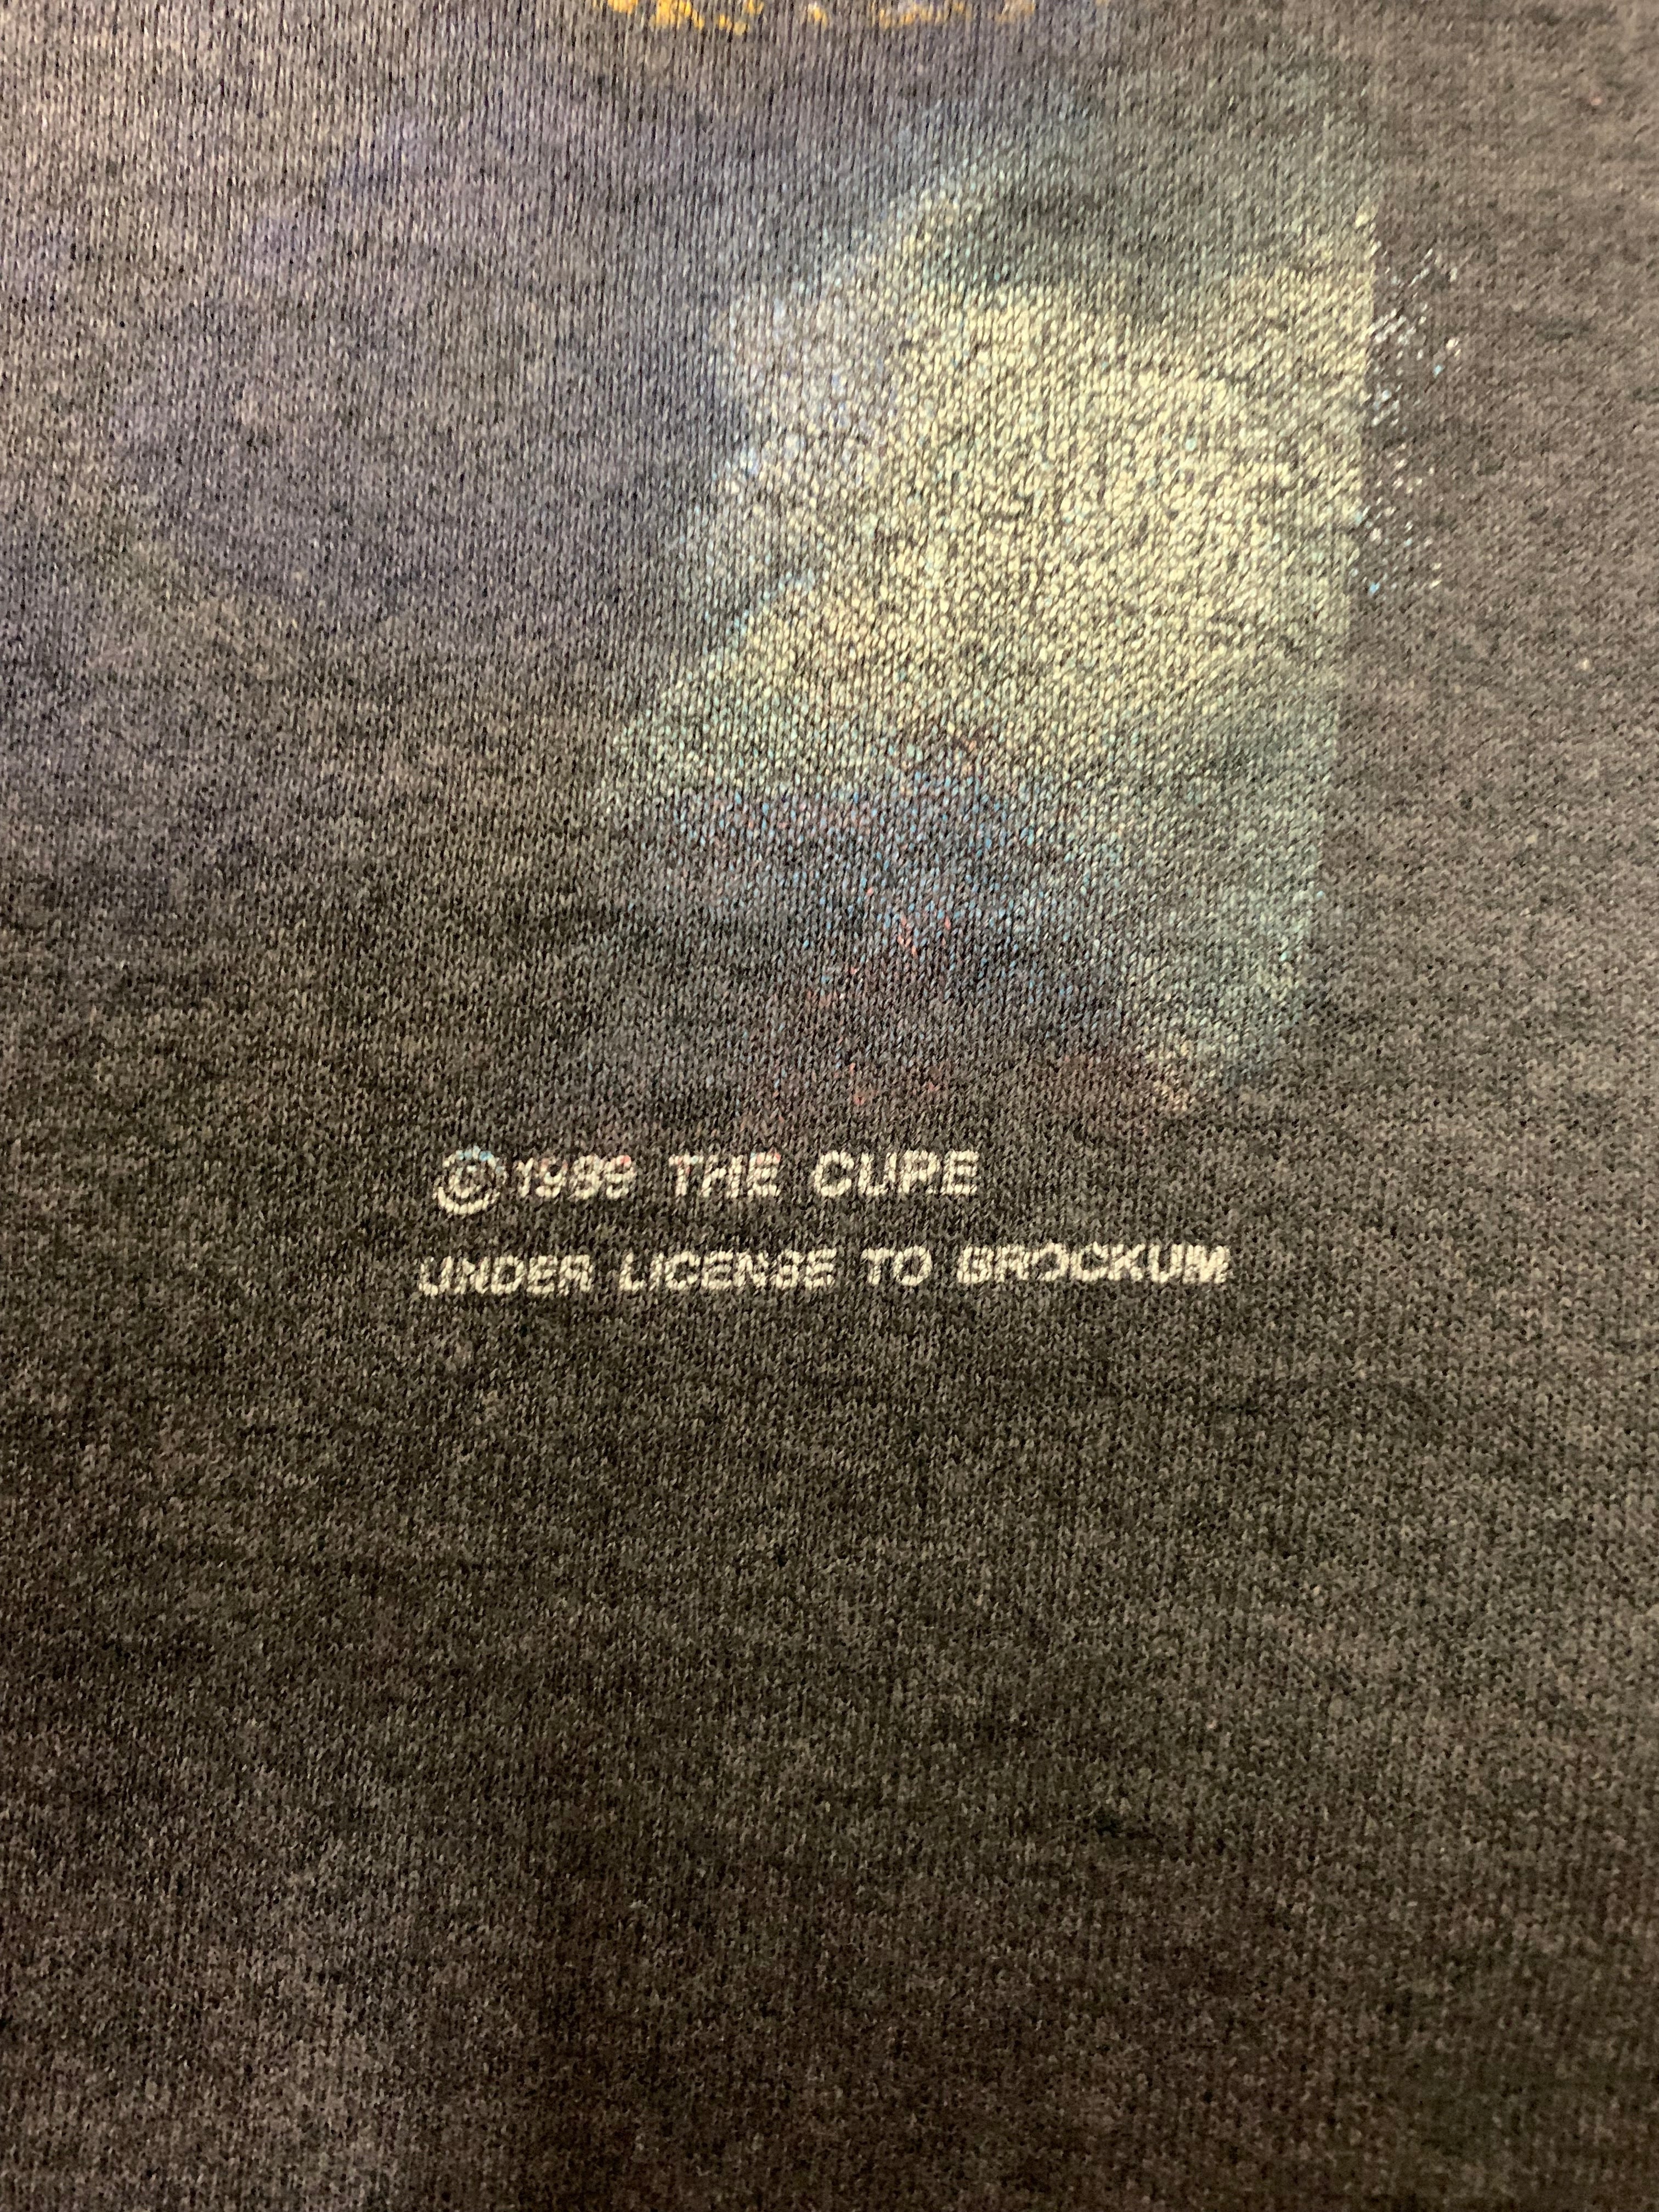 T-Shirt Authentique 'The Cure' tournée 1989